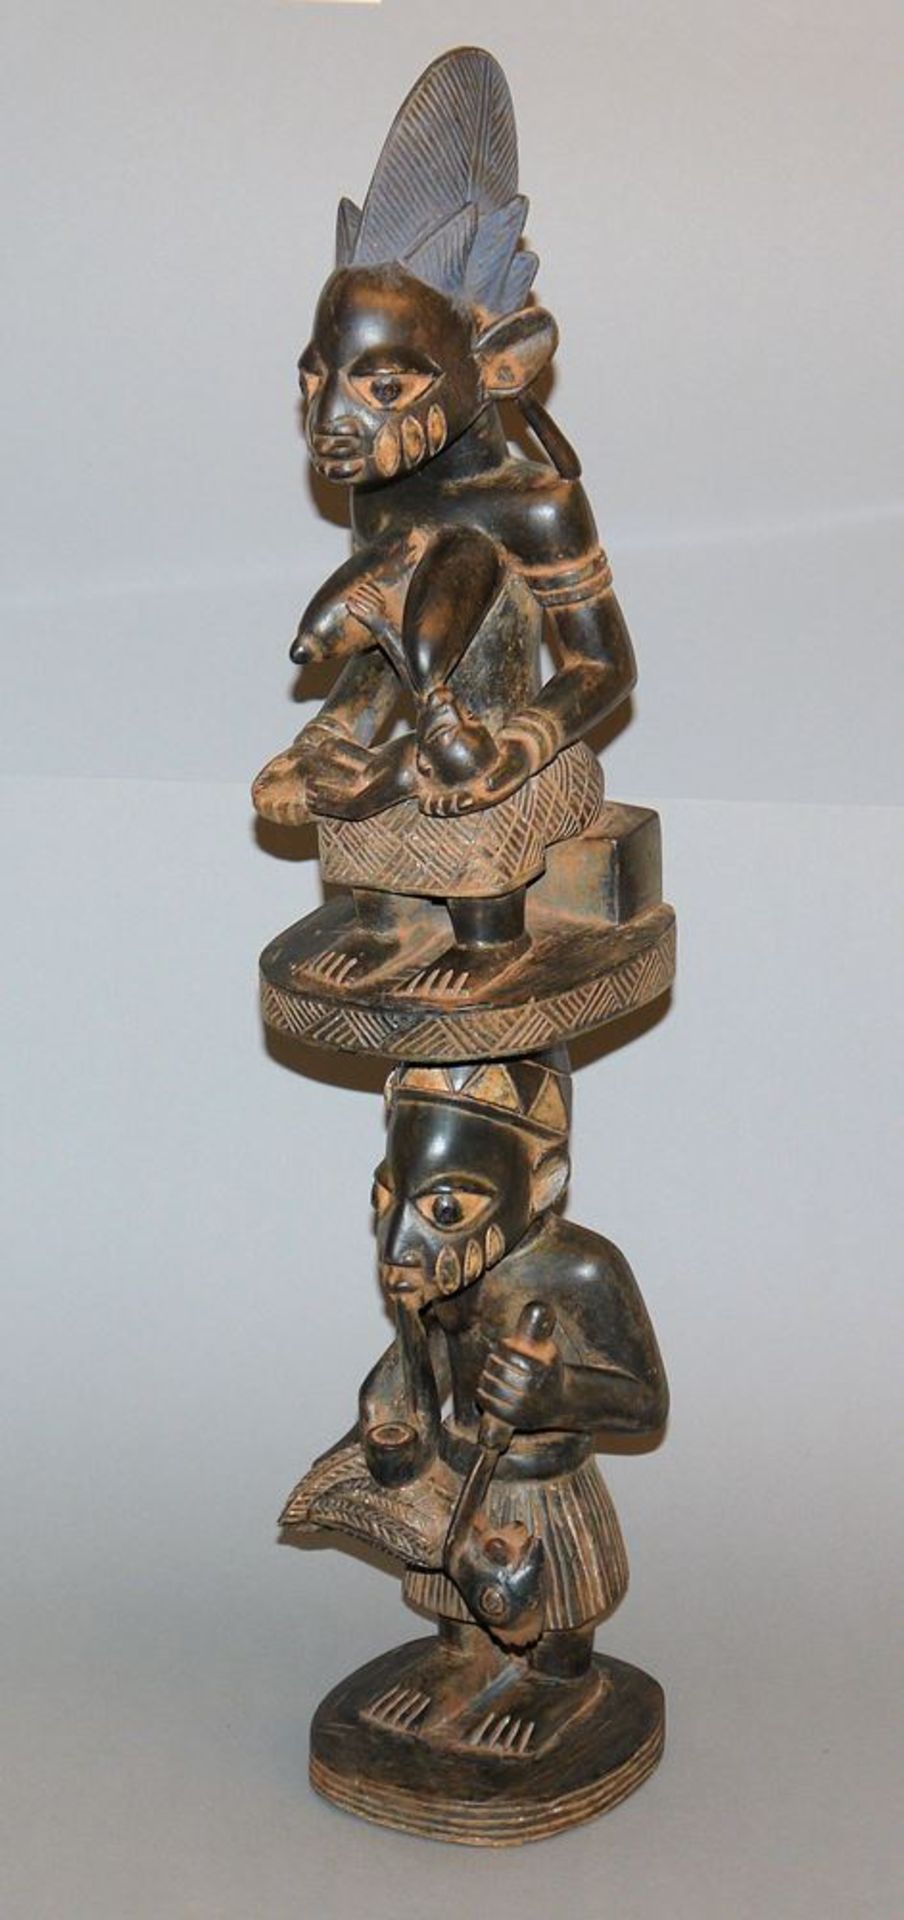 Figurenpaar mit Fruchtbarkeitssymbolik der Yoruba, Nigeria